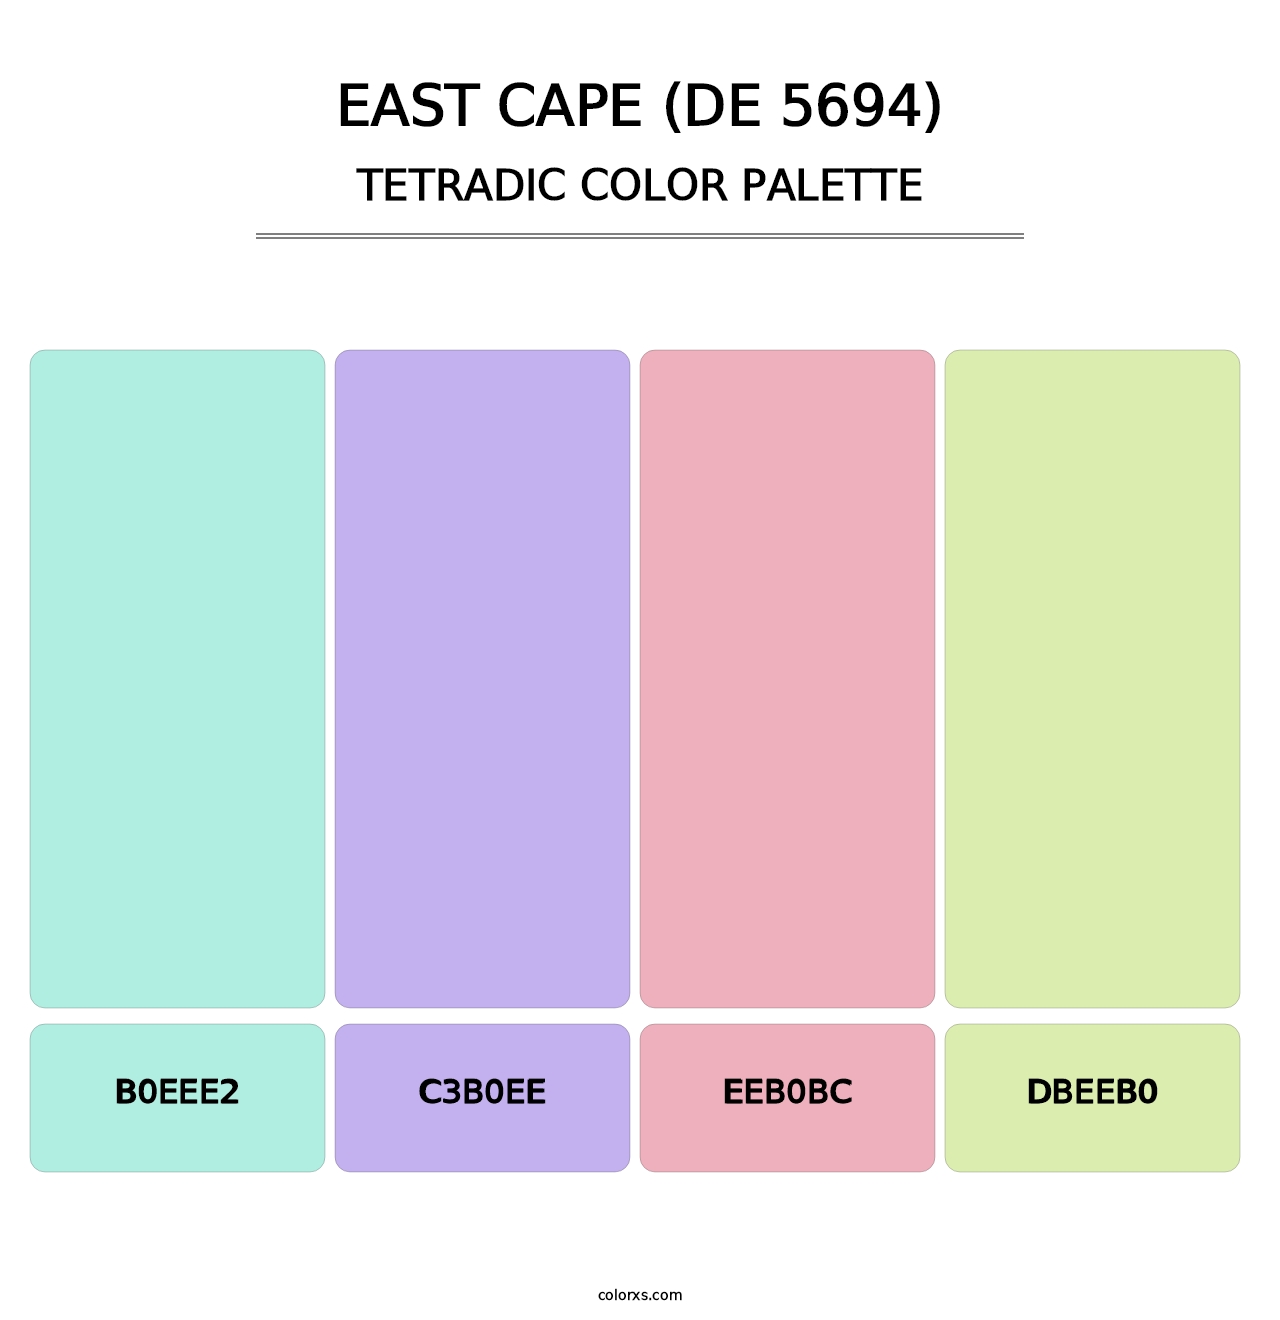 East Cape (DE 5694) - Tetradic Color Palette